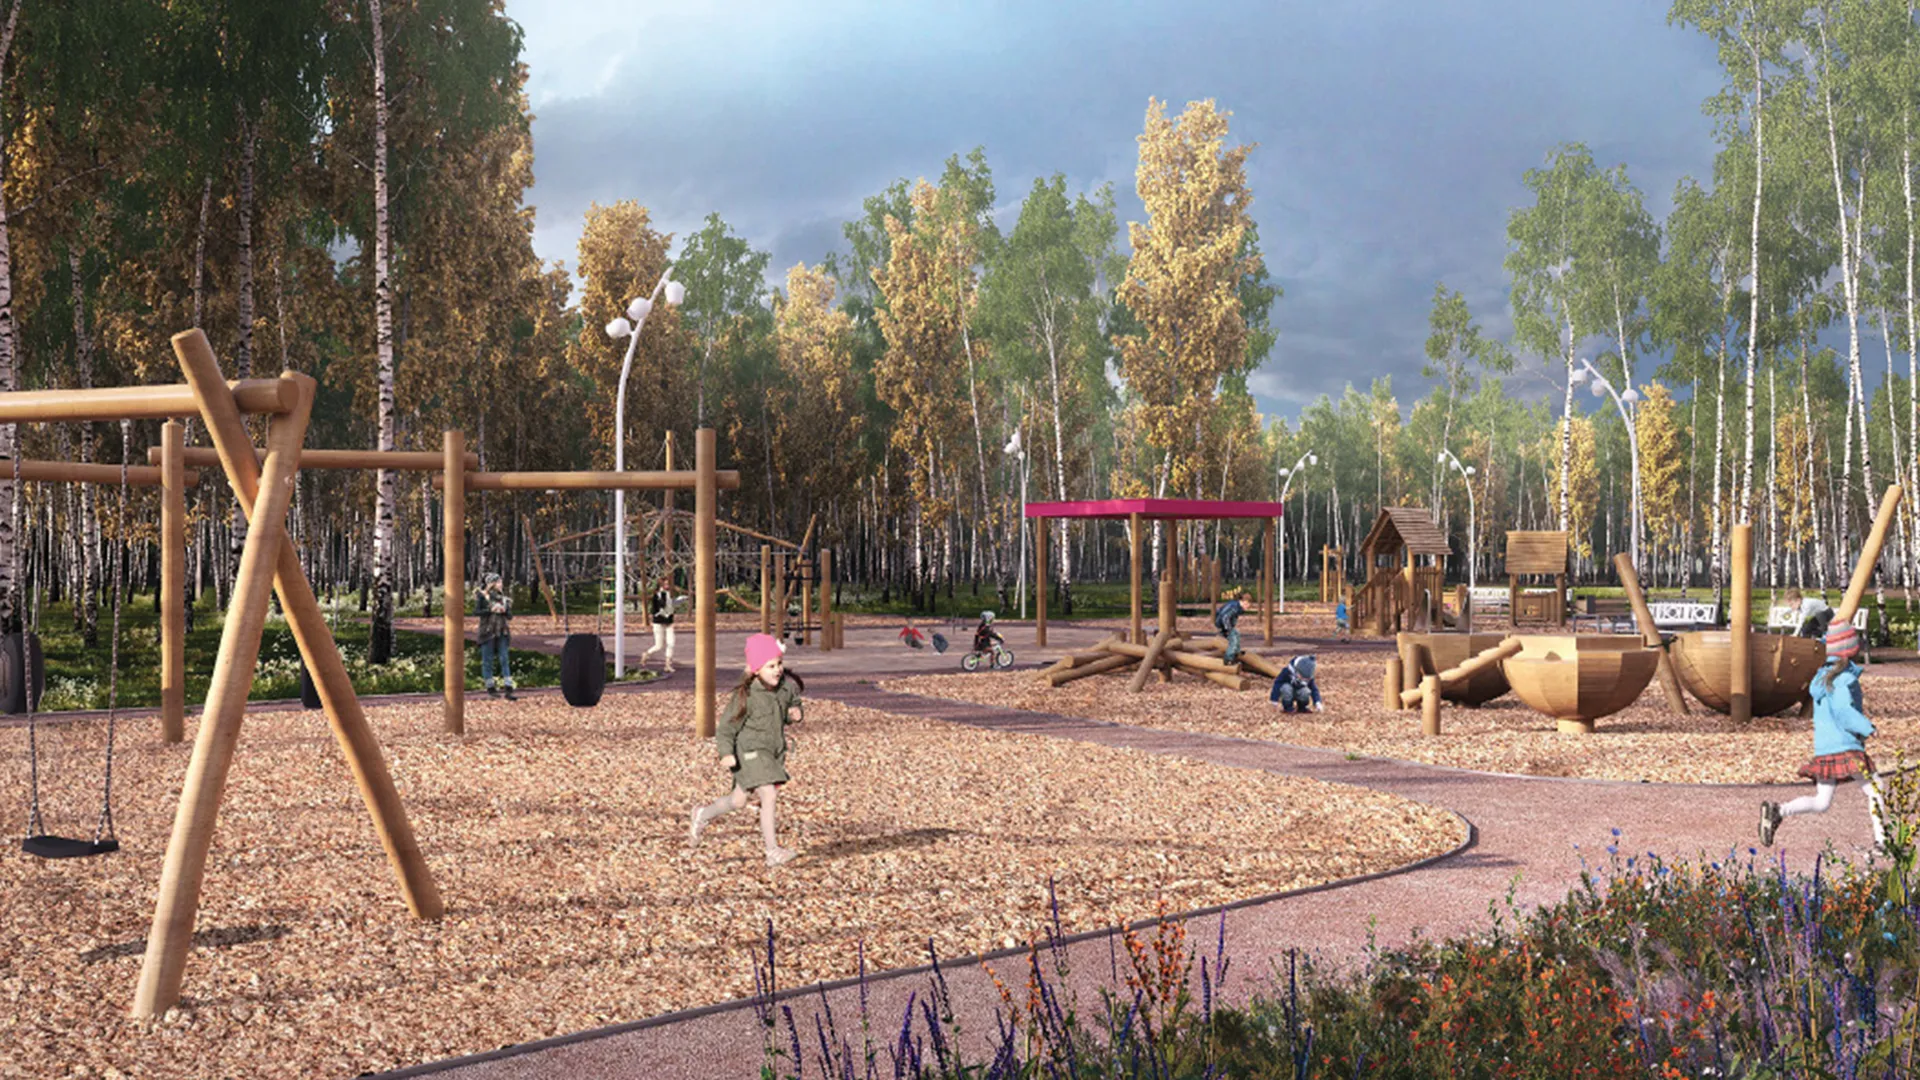 Парк «Зеленый узел» в Павловском Посаде благоустроят в 2024 году